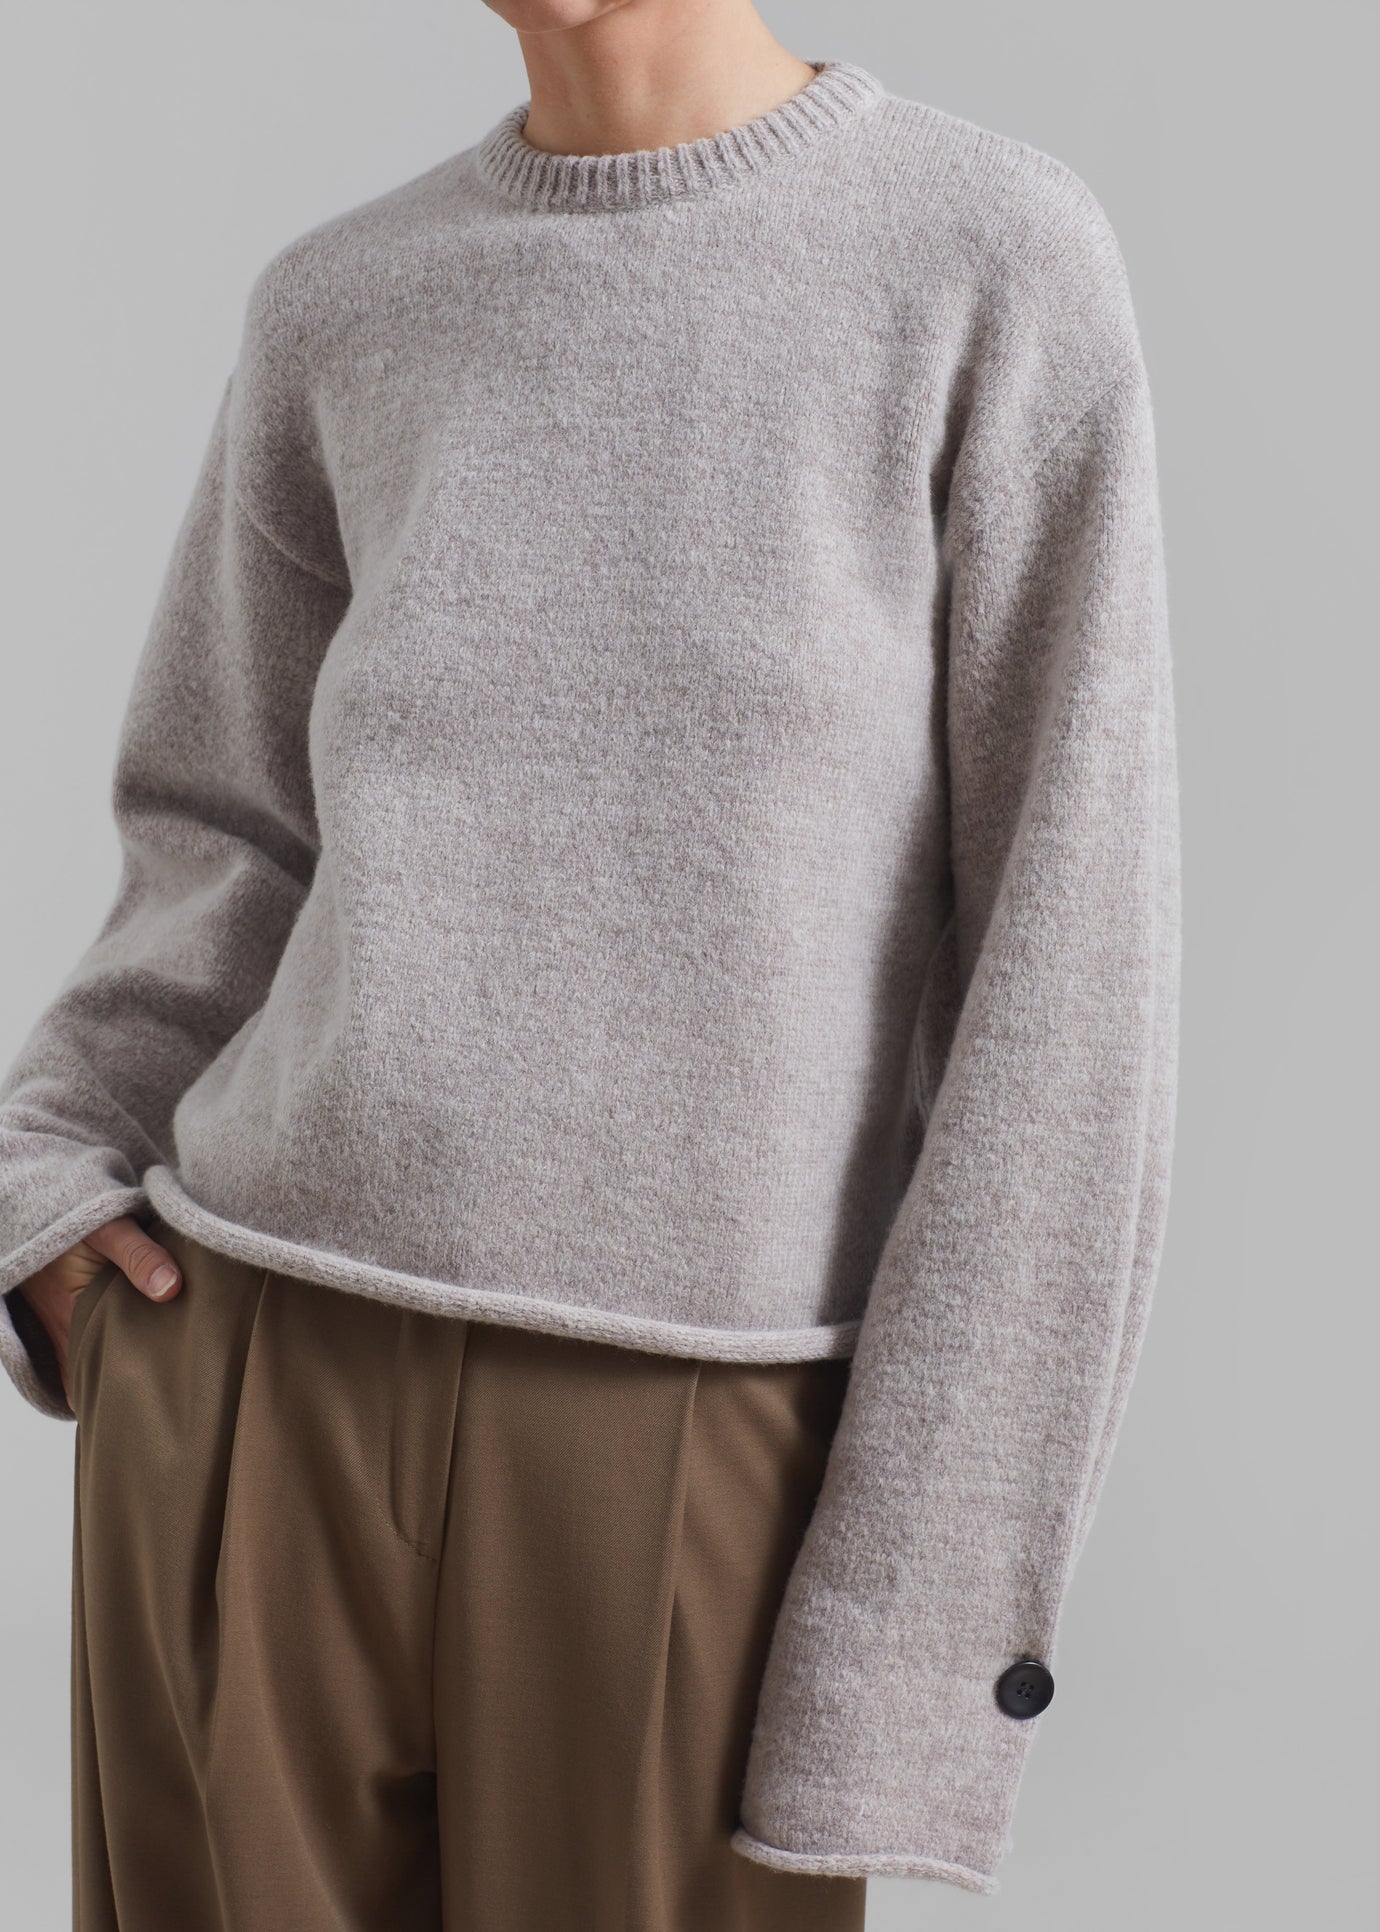 Proenza Schouler White Label Tara Sweater - Fig - 1